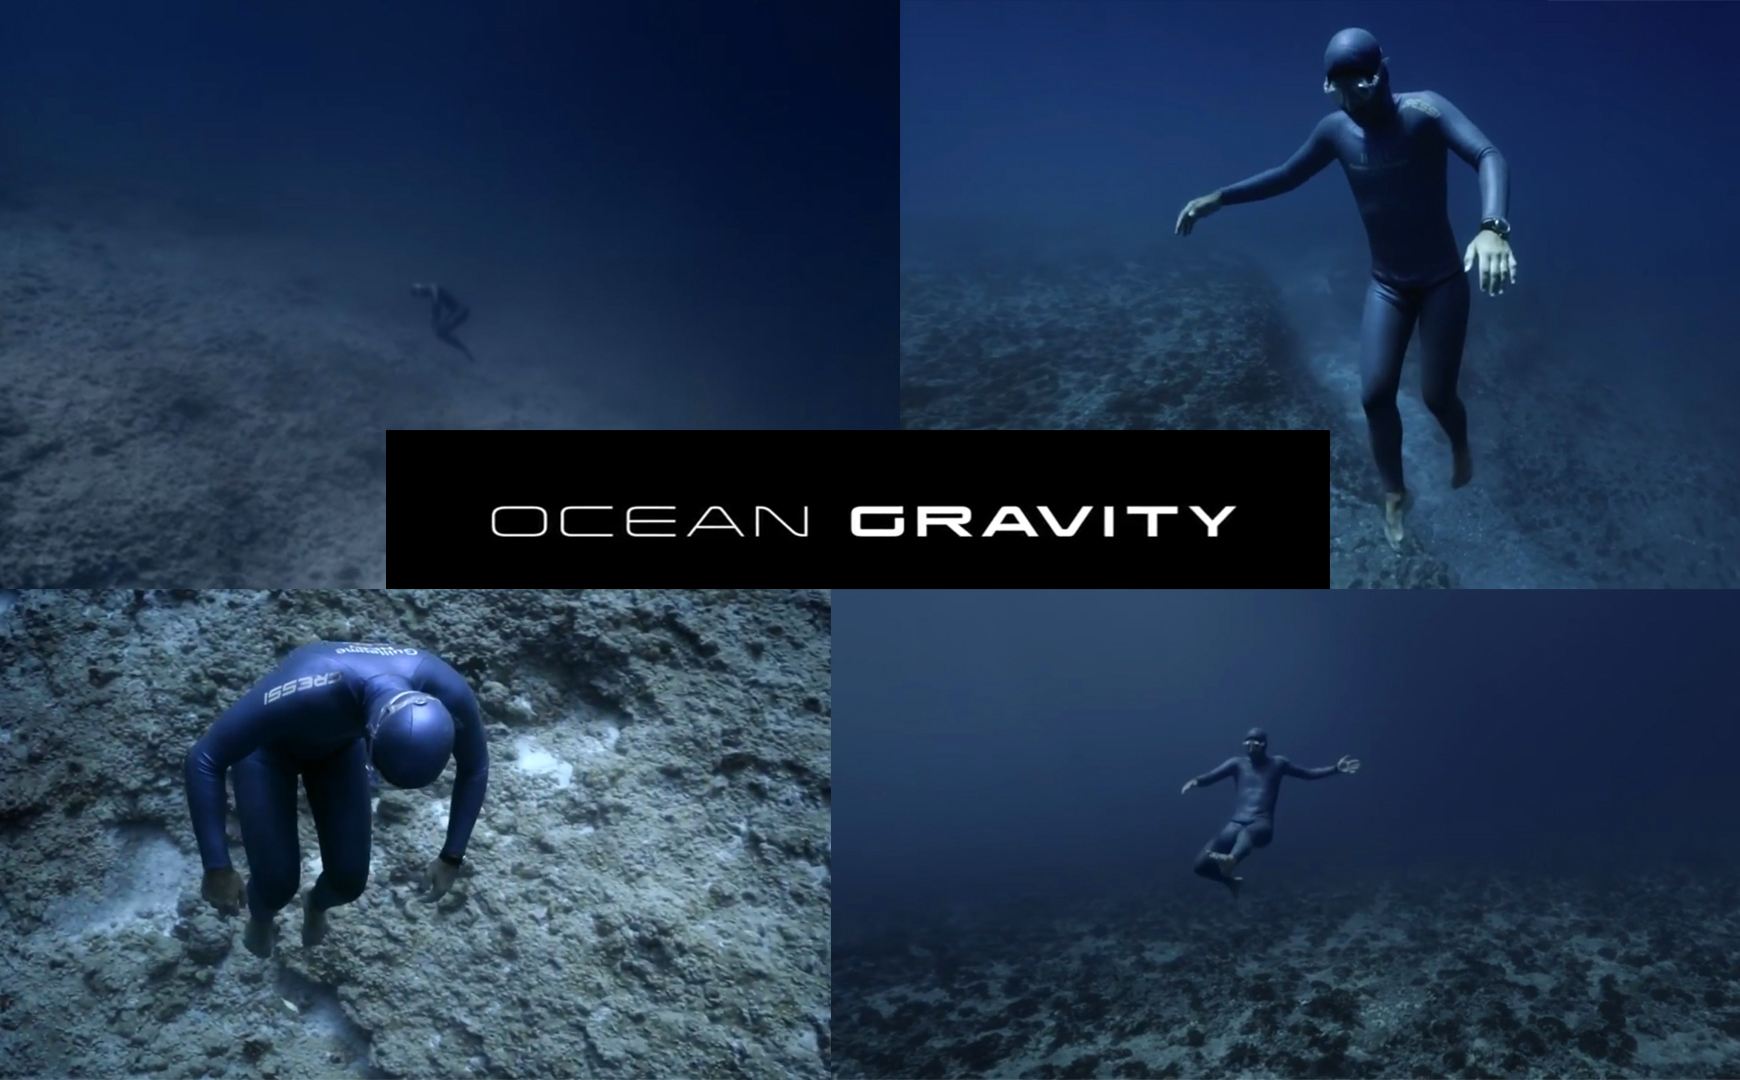 OCEAN GRAVITY